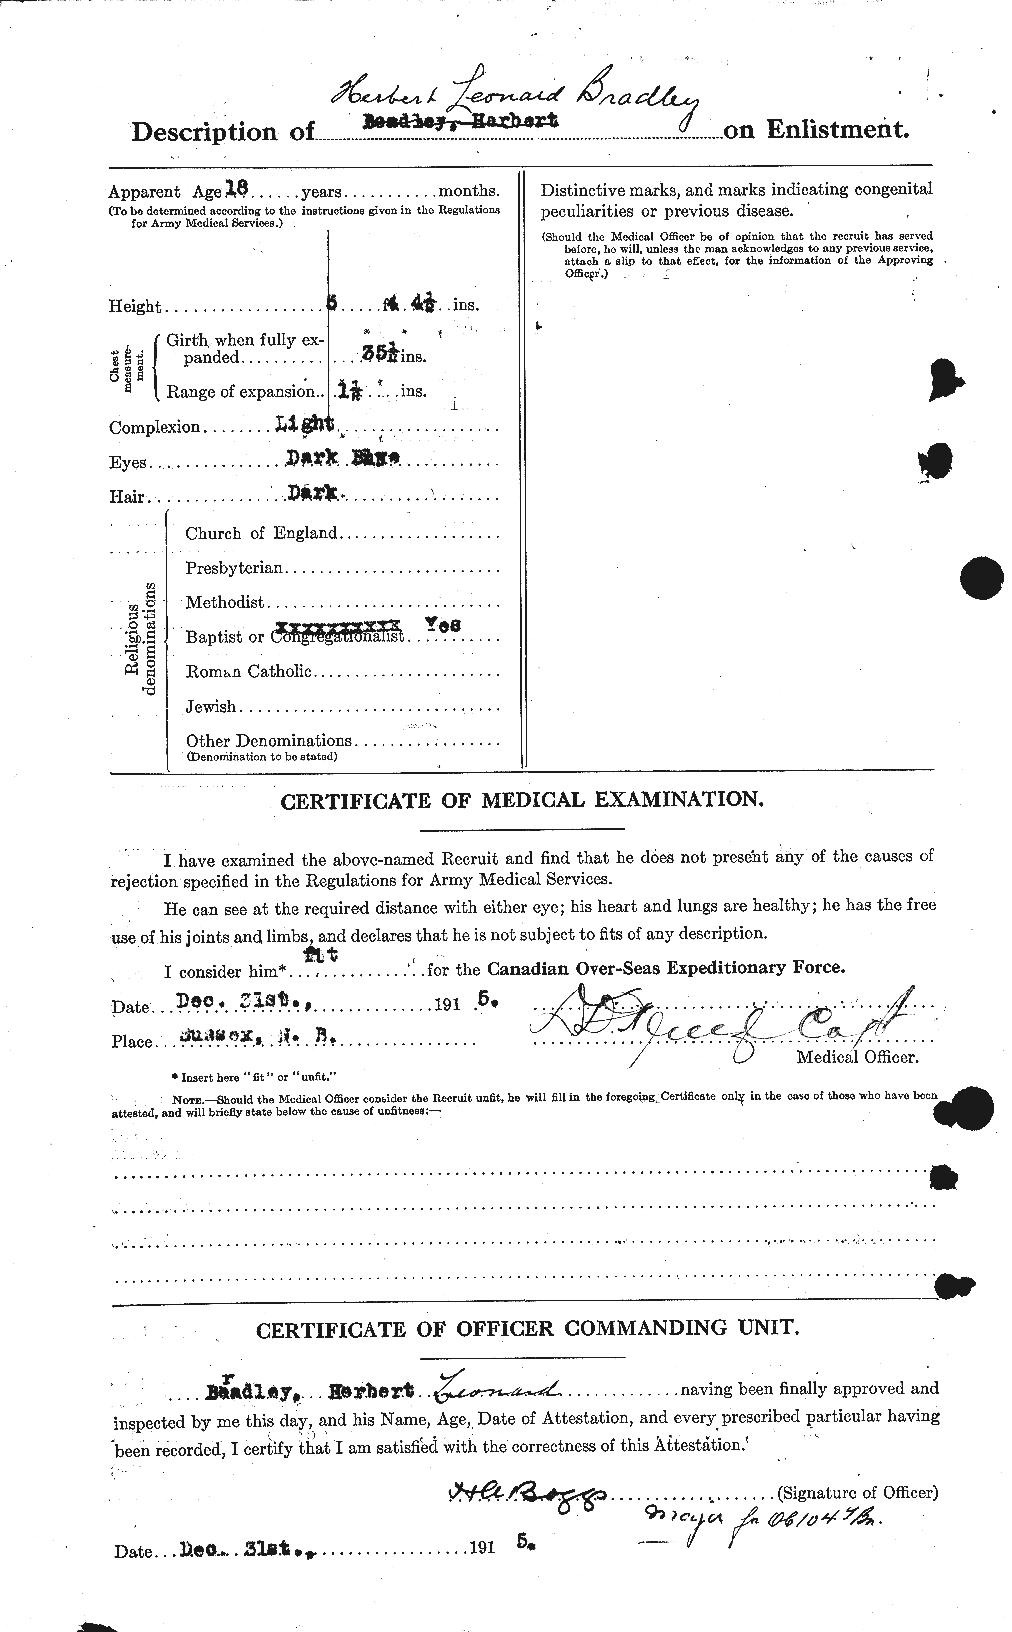 Dossiers du Personnel de la Première Guerre mondiale - CEC 258437b